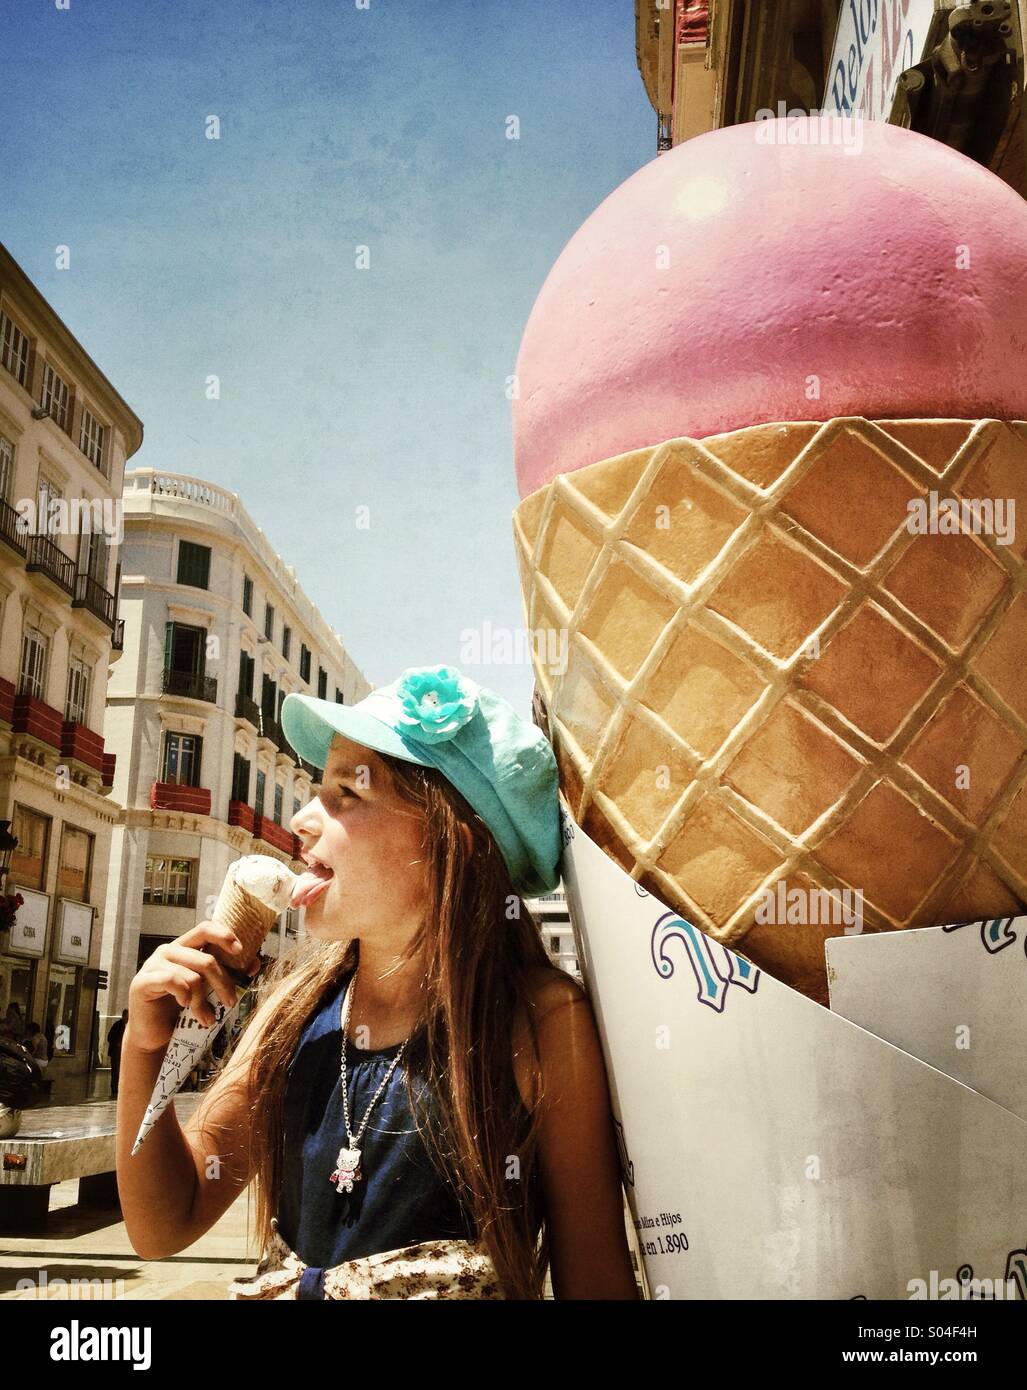 Young girl eating icecream. Stock Photo